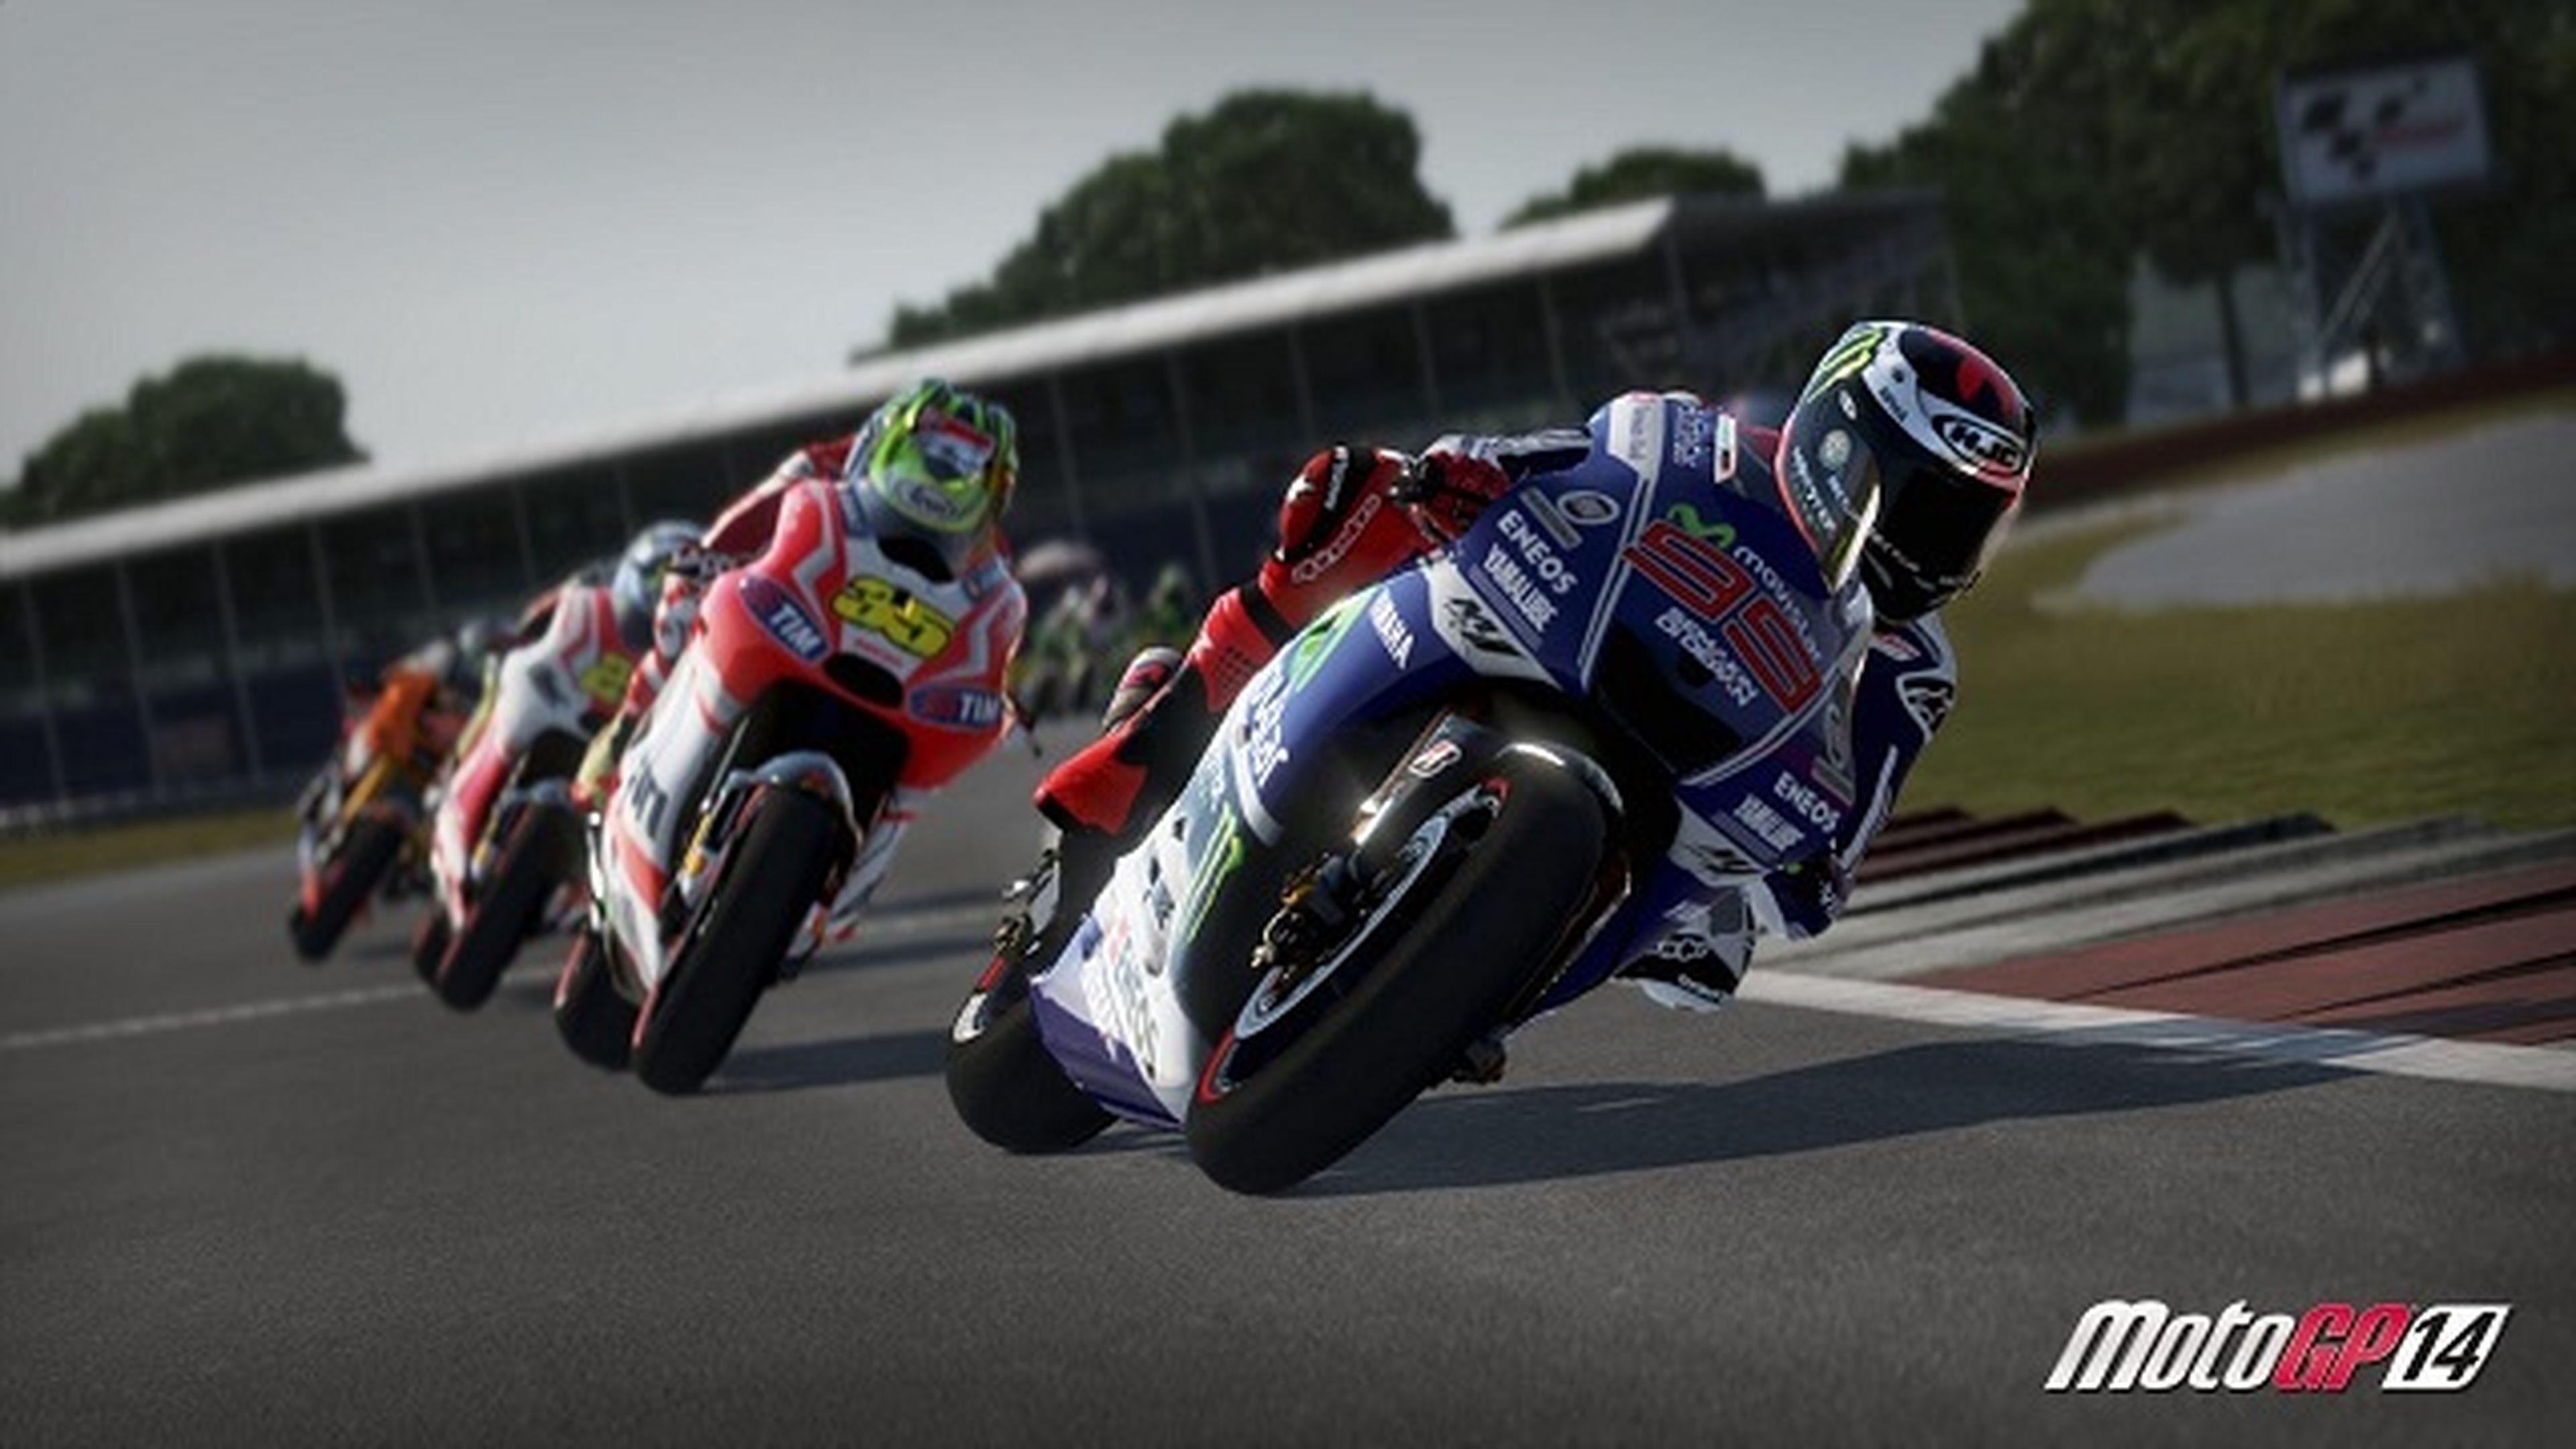 Los mejores juegos de motos de 2014: MotoGP 14